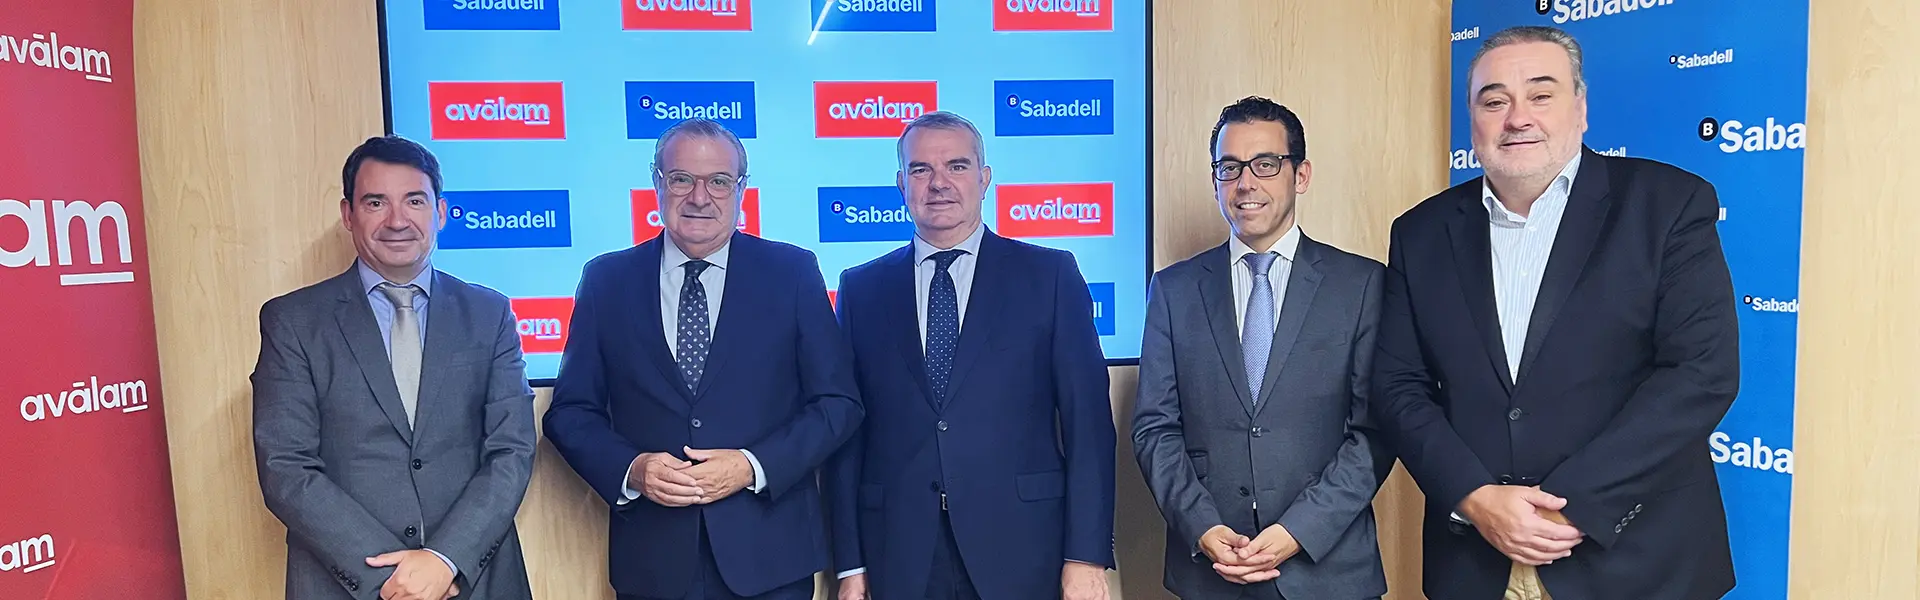 Banco Sabadell y Avalam amplian su linea de financiacion para pymes y autonomos ultimas noticias